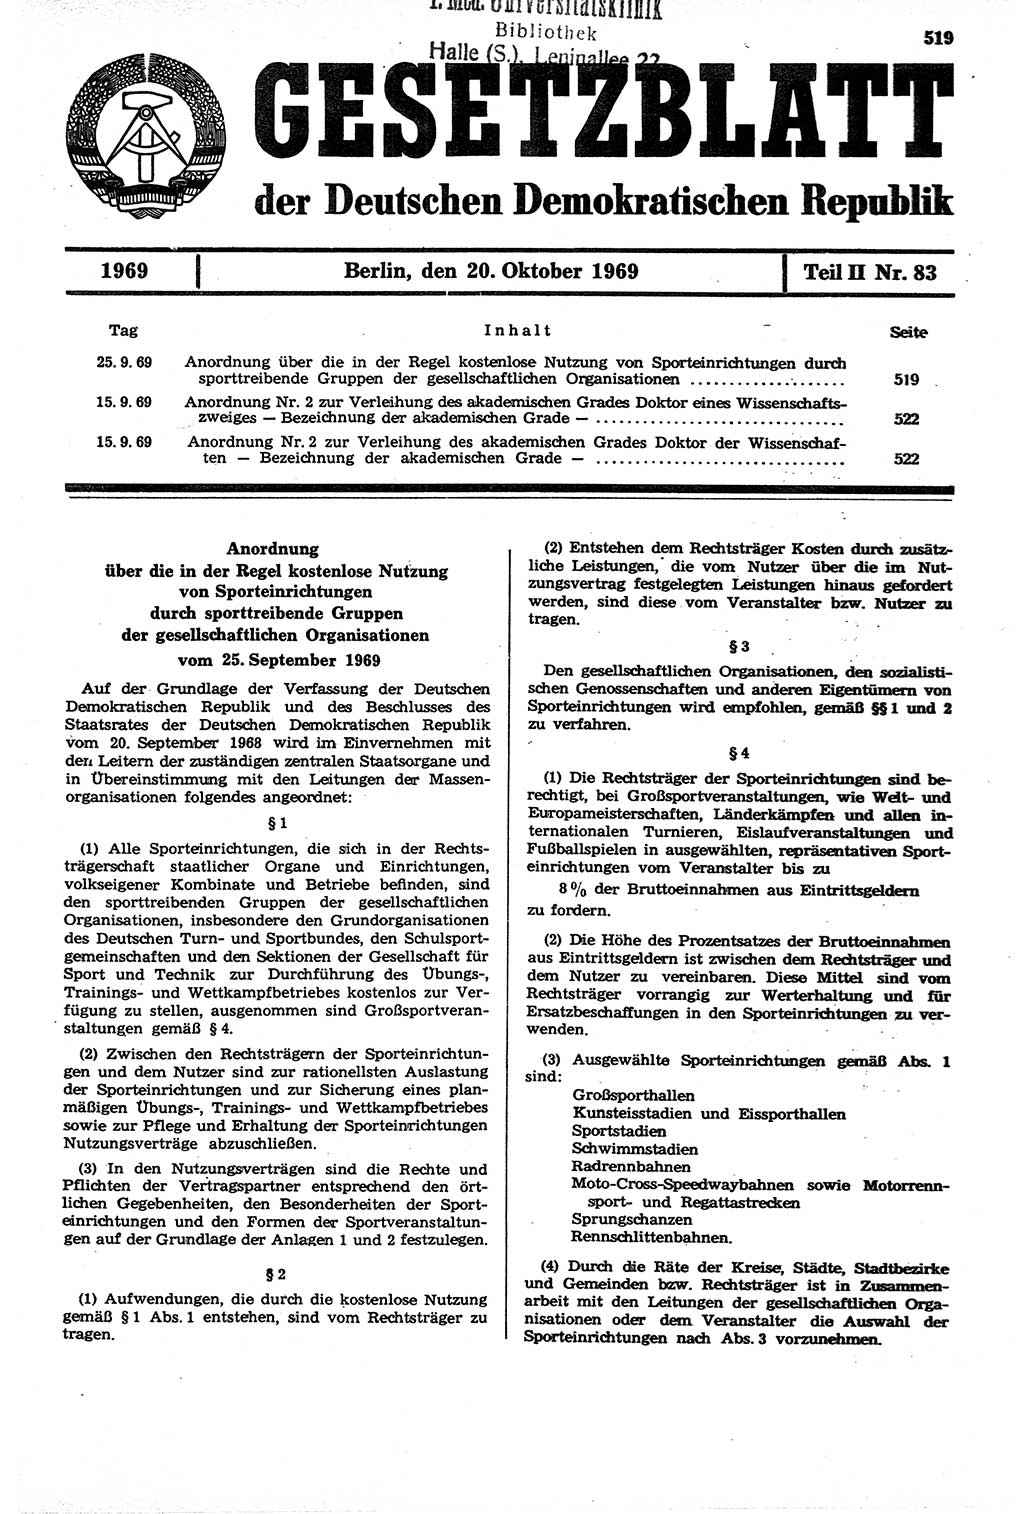 Gesetzblatt (GBl.) der Deutschen Demokratischen Republik (DDR) Teil ⅠⅠ 1969, Seite 519 (GBl. DDR ⅠⅠ 1969, S. 519)